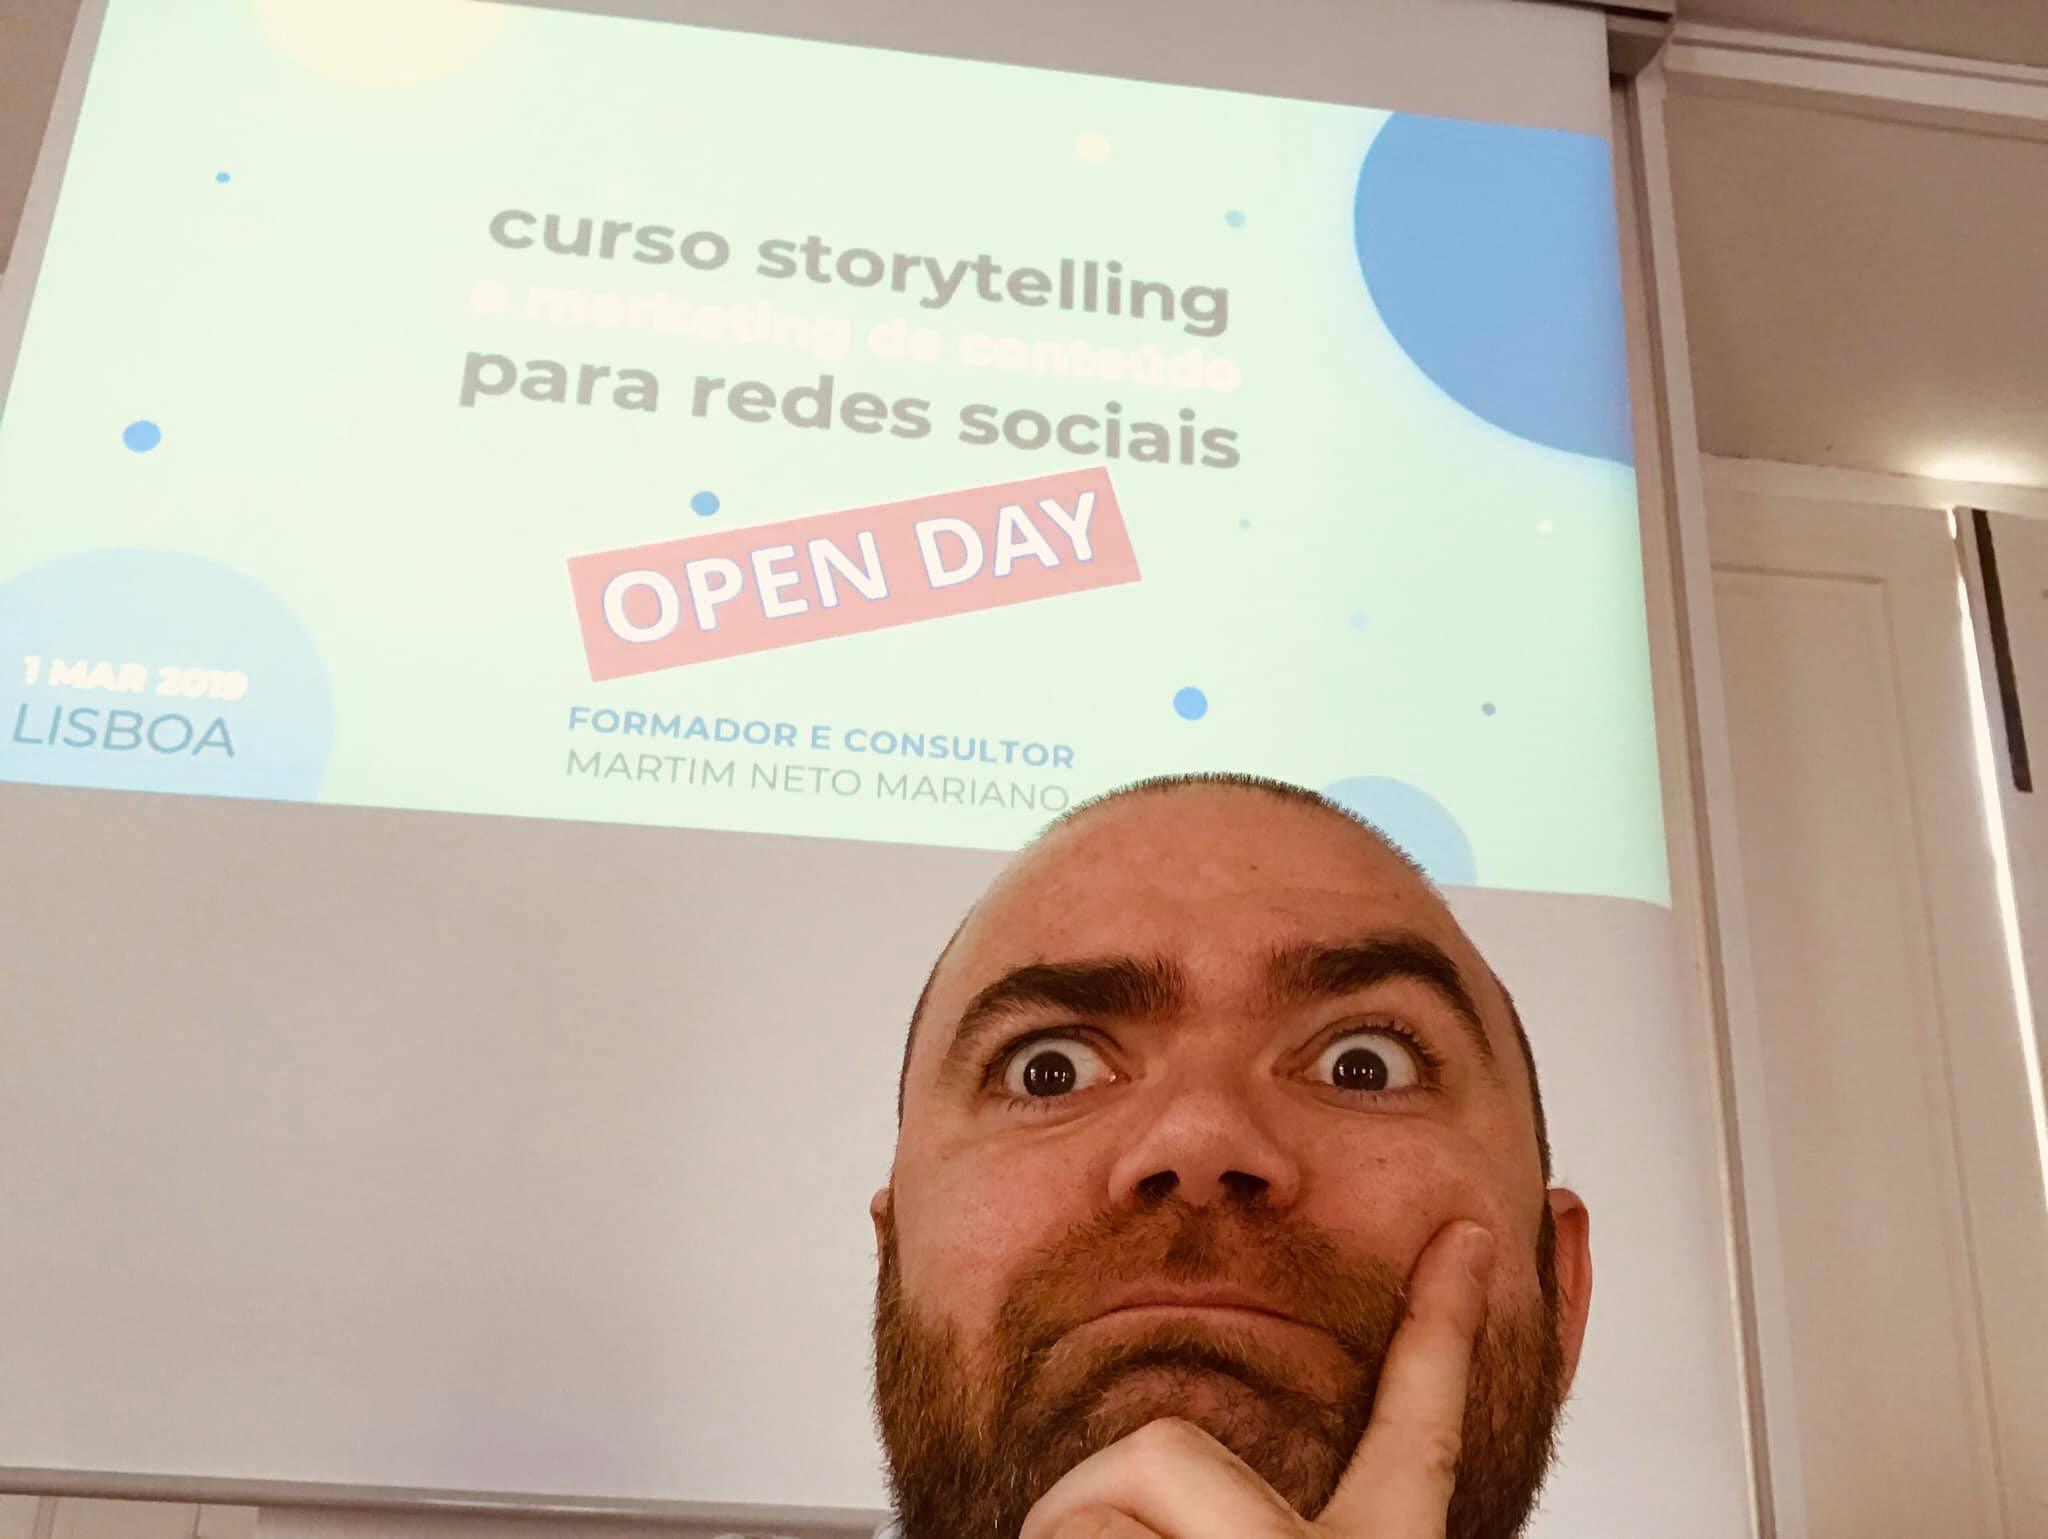 Martim Mariano - Copywriter e Consultor de Comunicação - Connecting Stories PARTTEAM & OEMKIOSKS